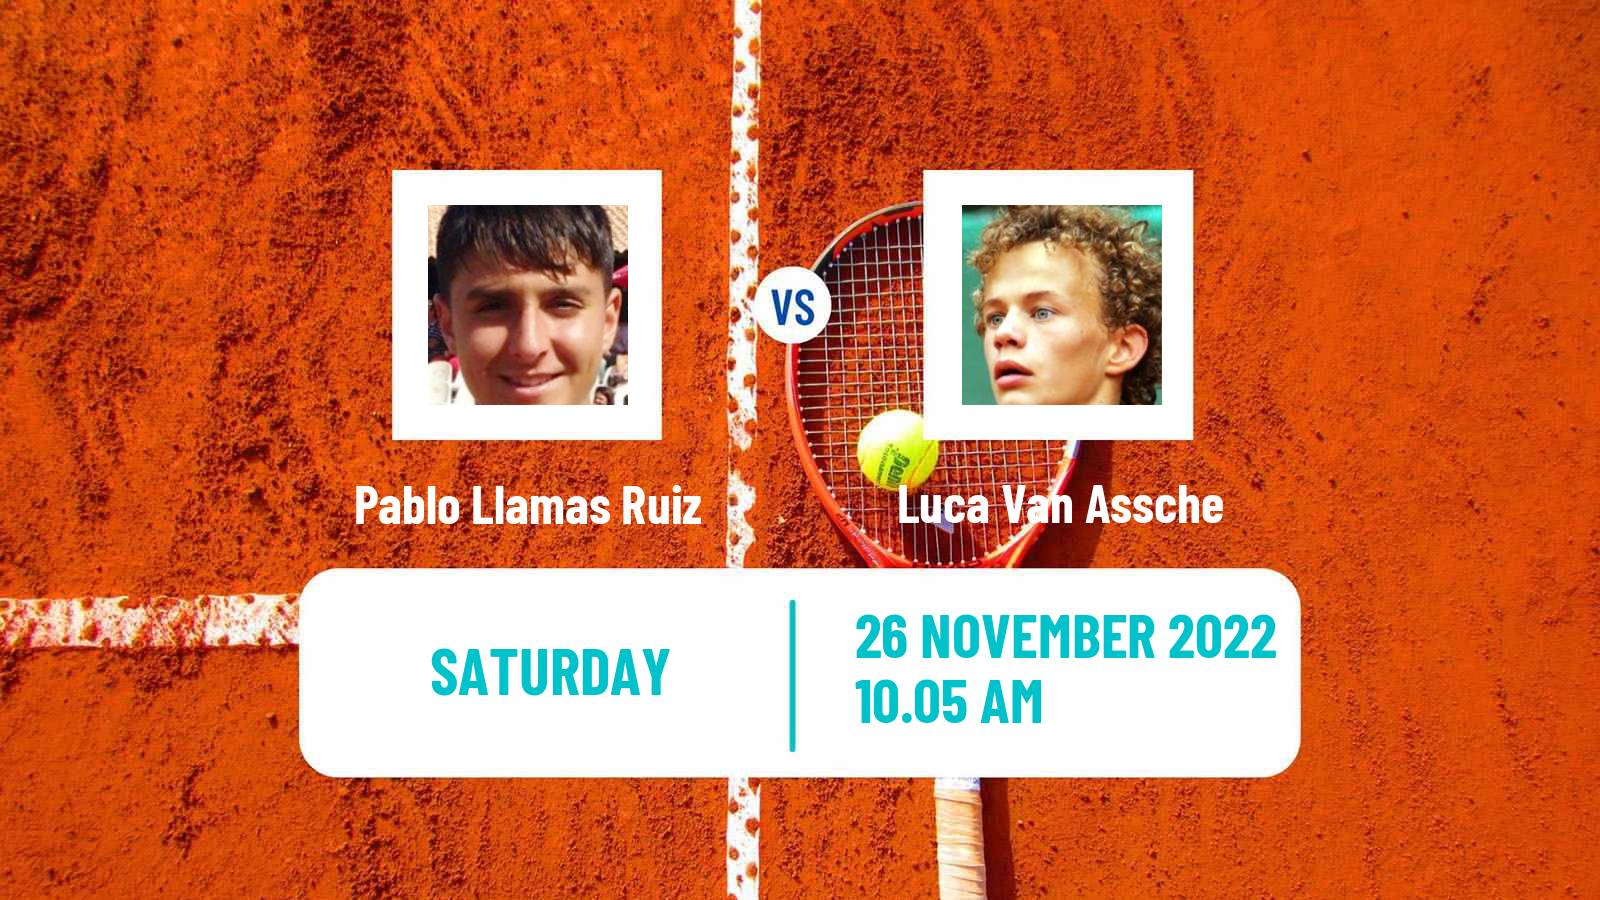 Tennis ATP Challenger Pablo Llamas Ruiz - Luca Van Assche